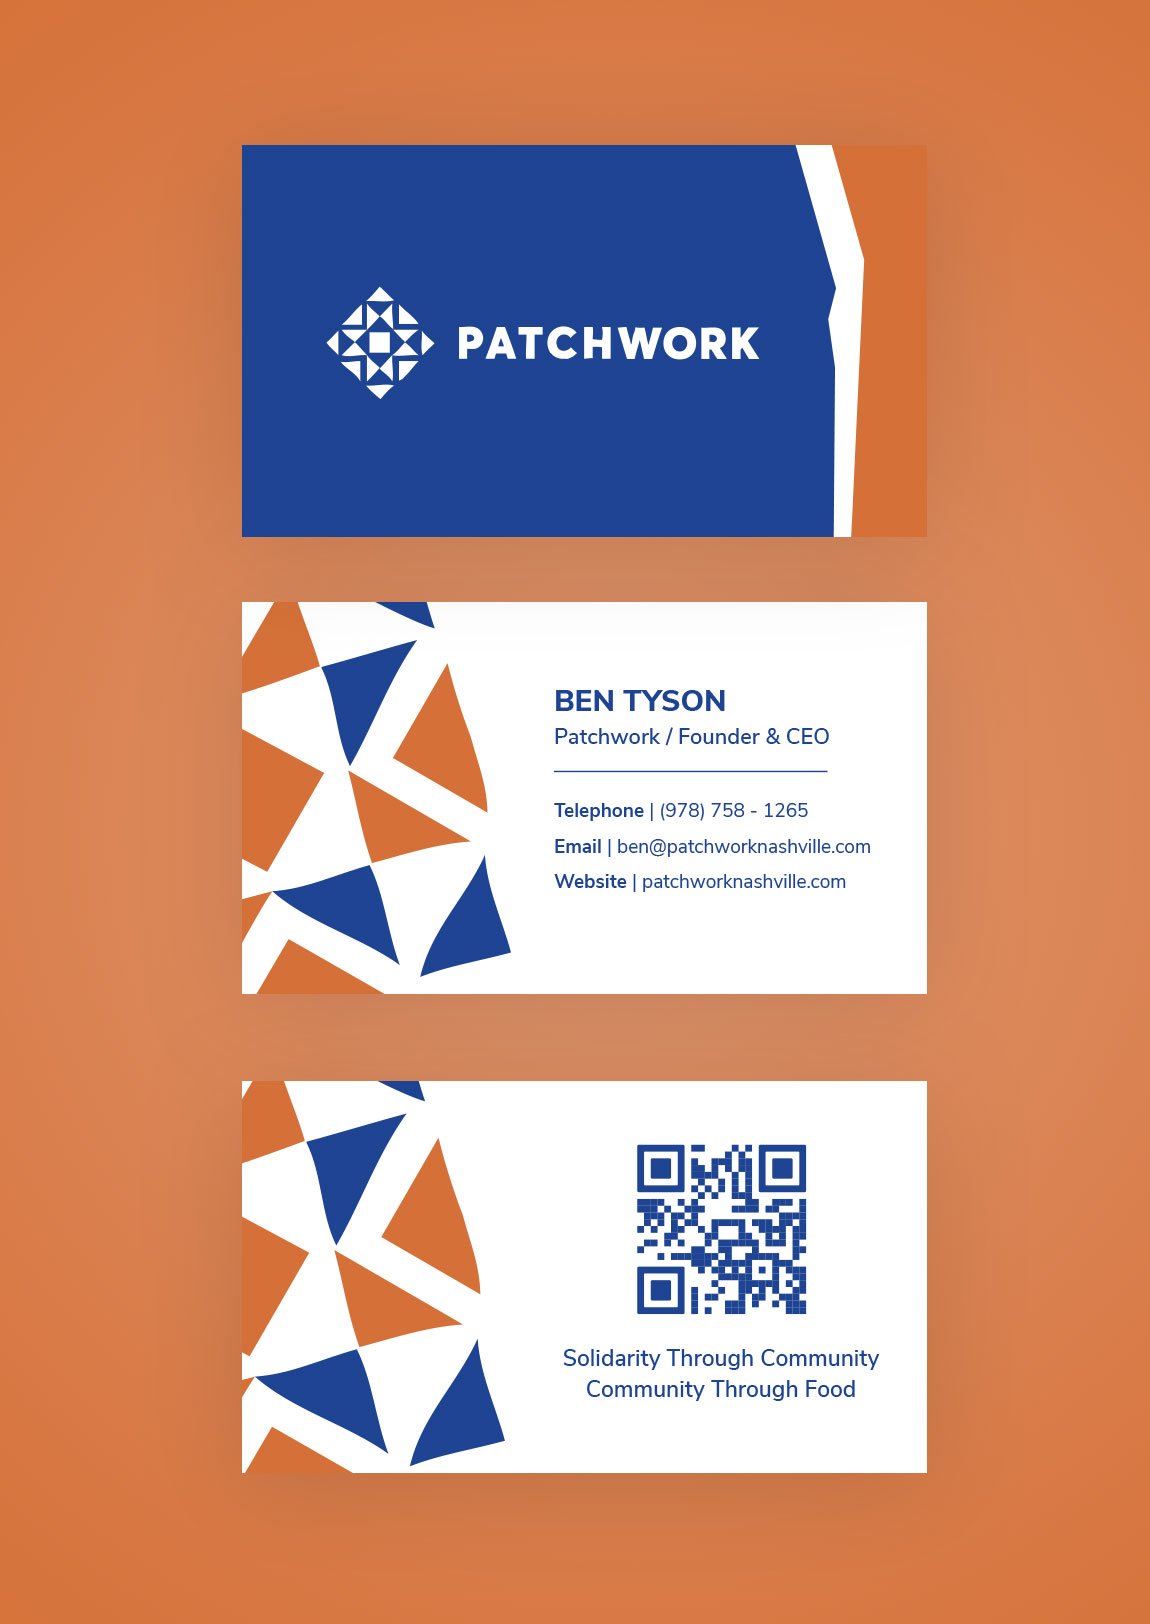 Patchwork Nashville - Business Cards